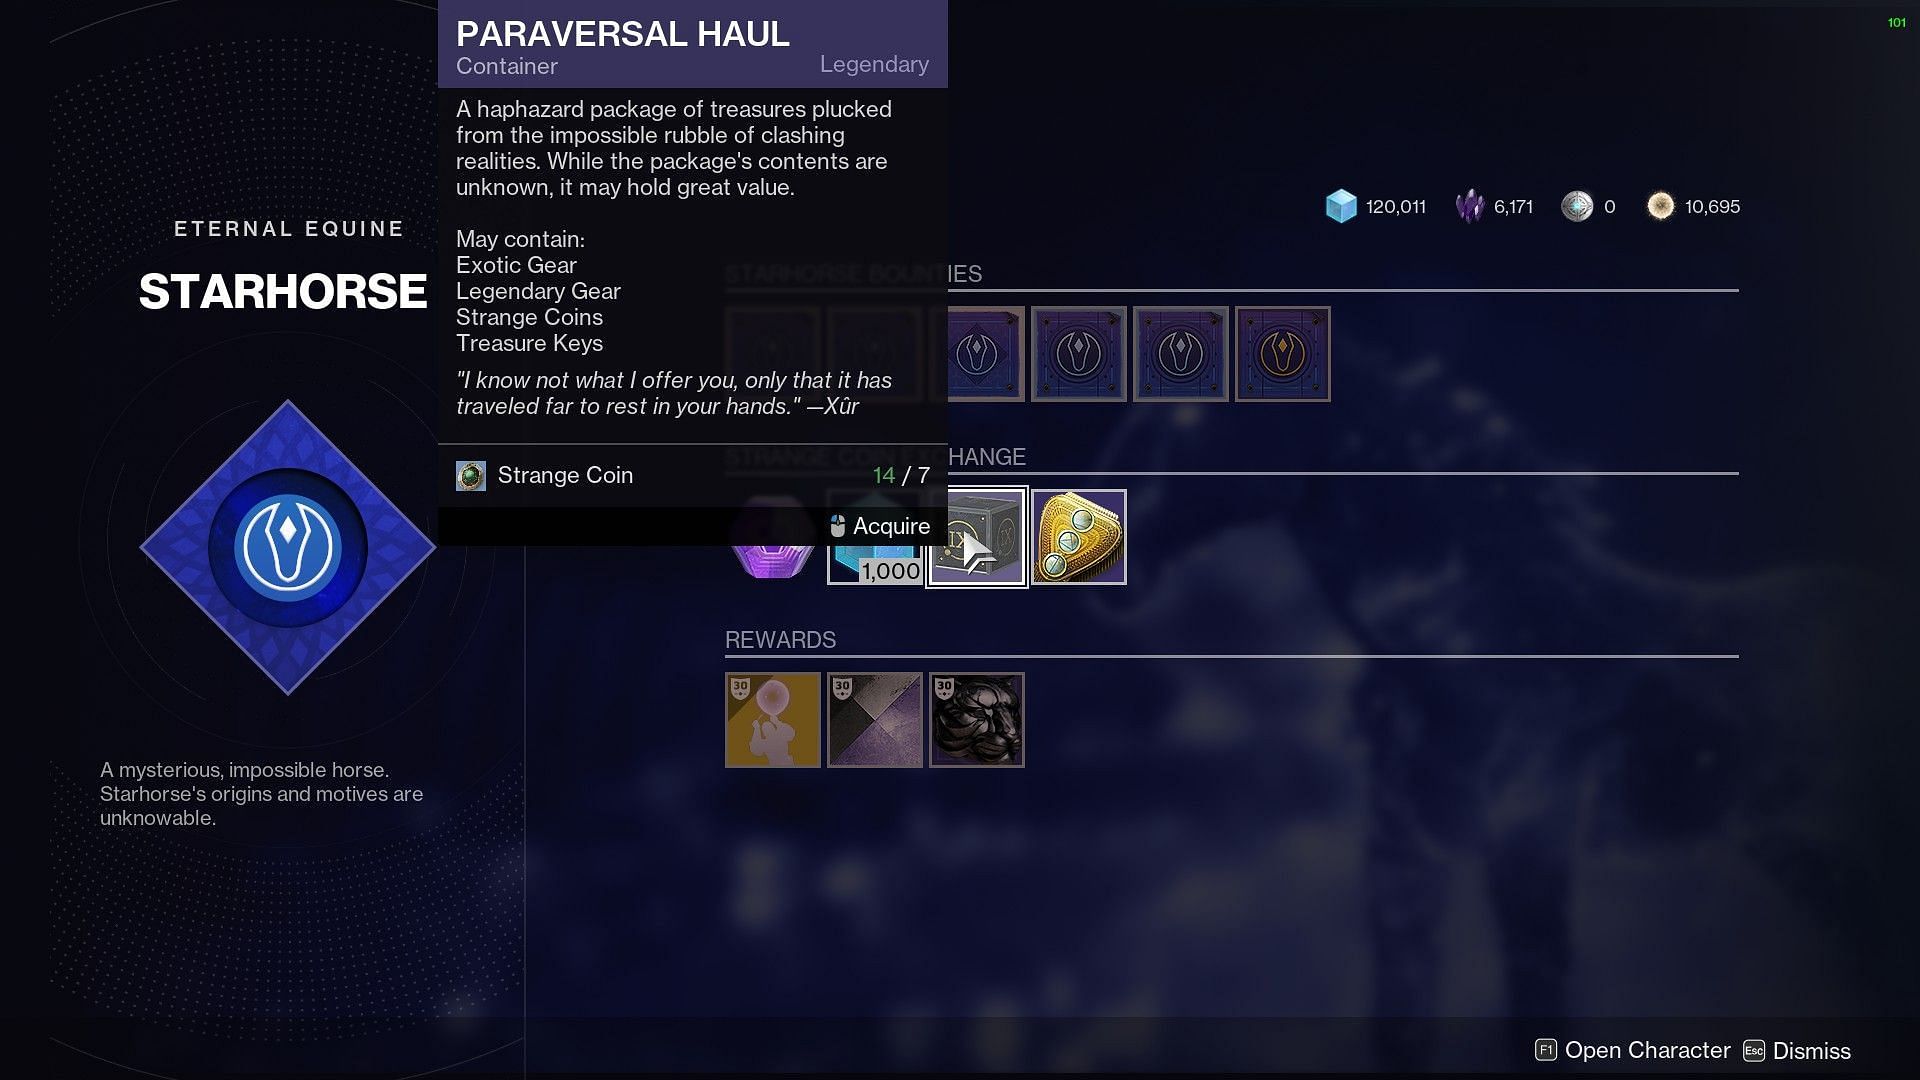 The Paraversal Haul (Image via Destiny 2/Bungie)